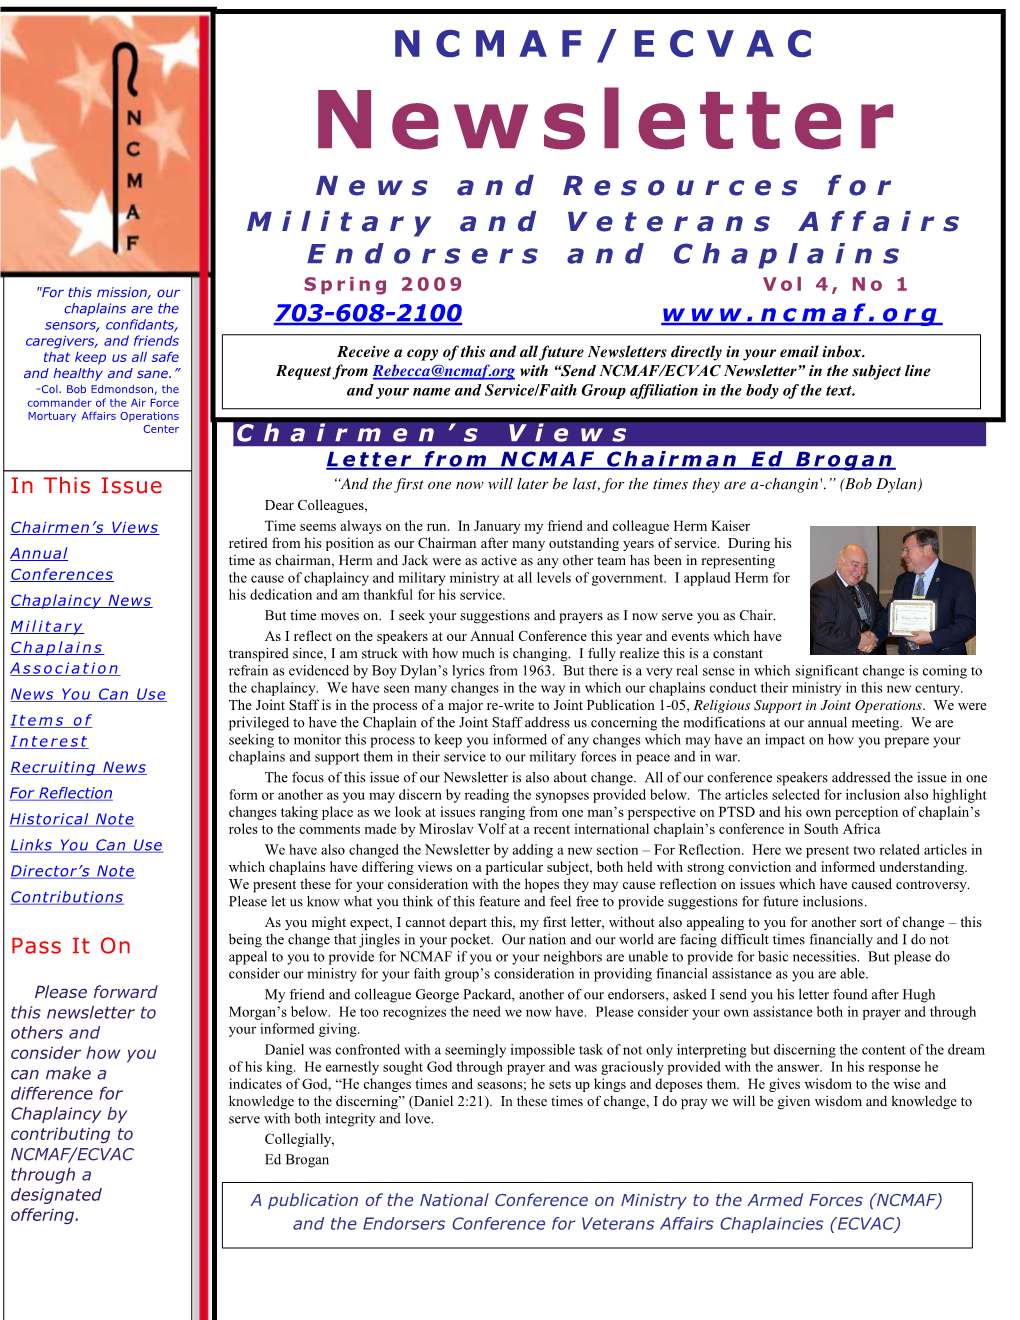 Spring 2009 Newsletter